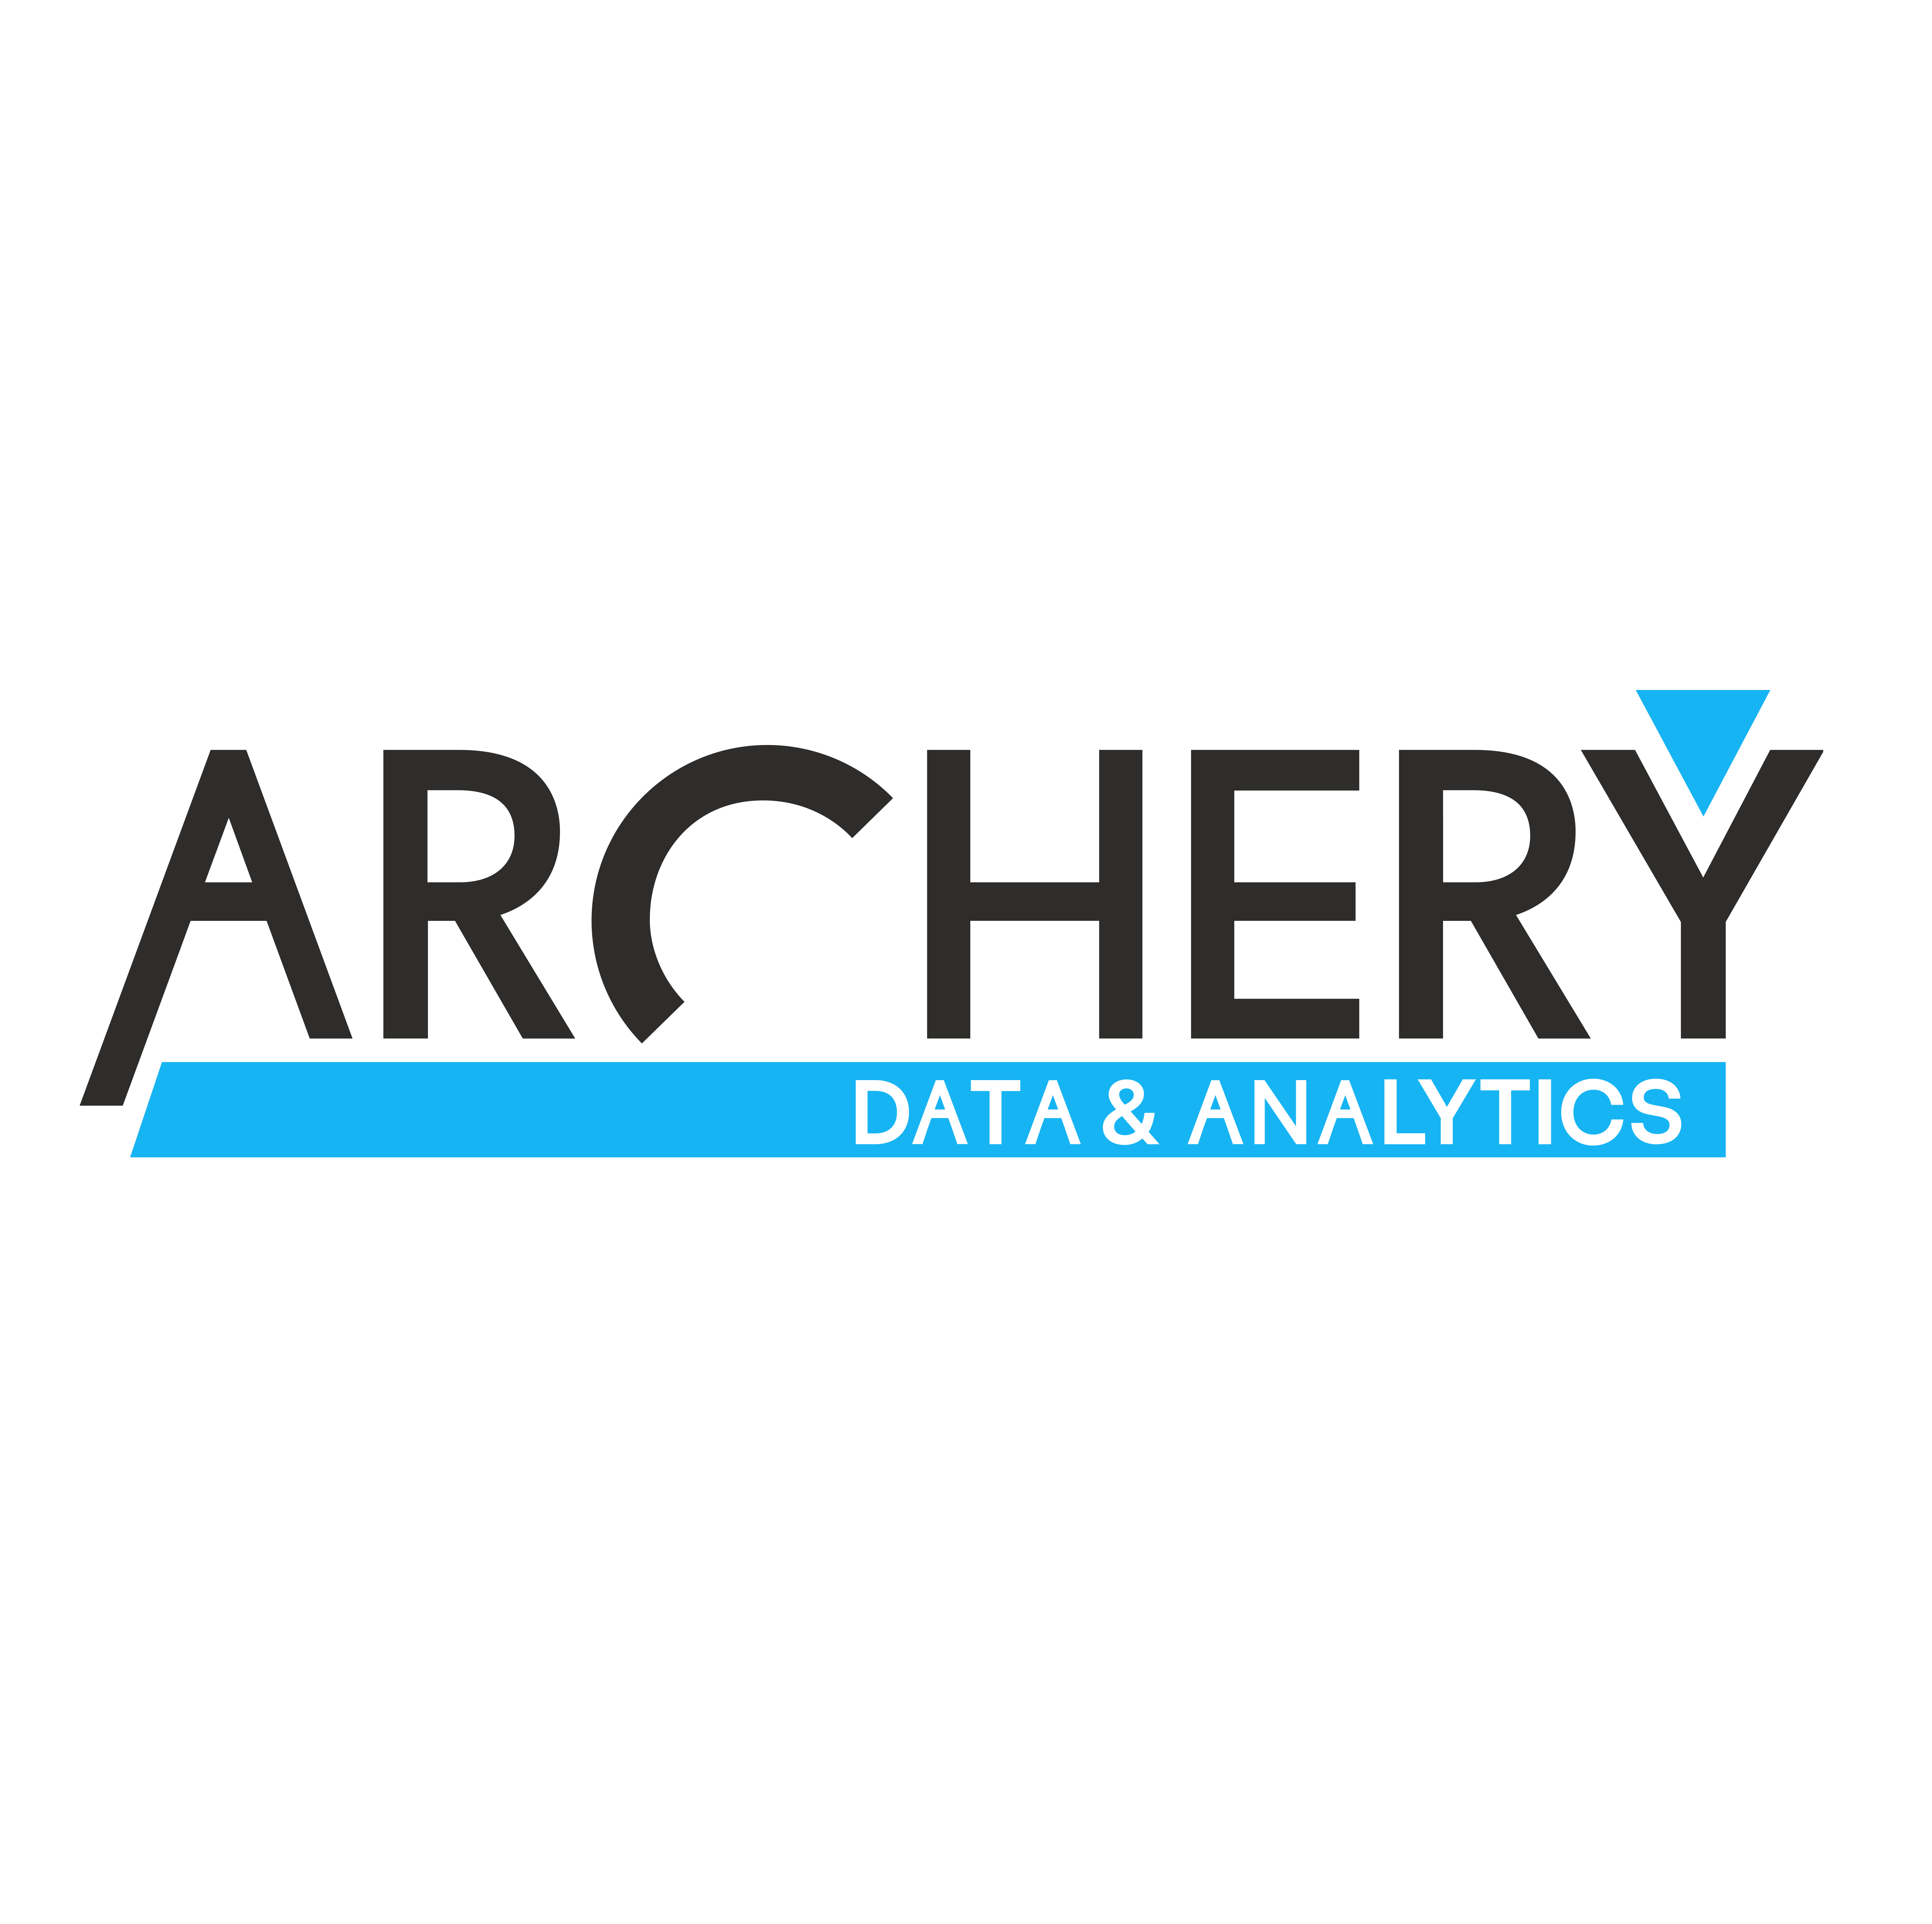 Archery Data & Analytics